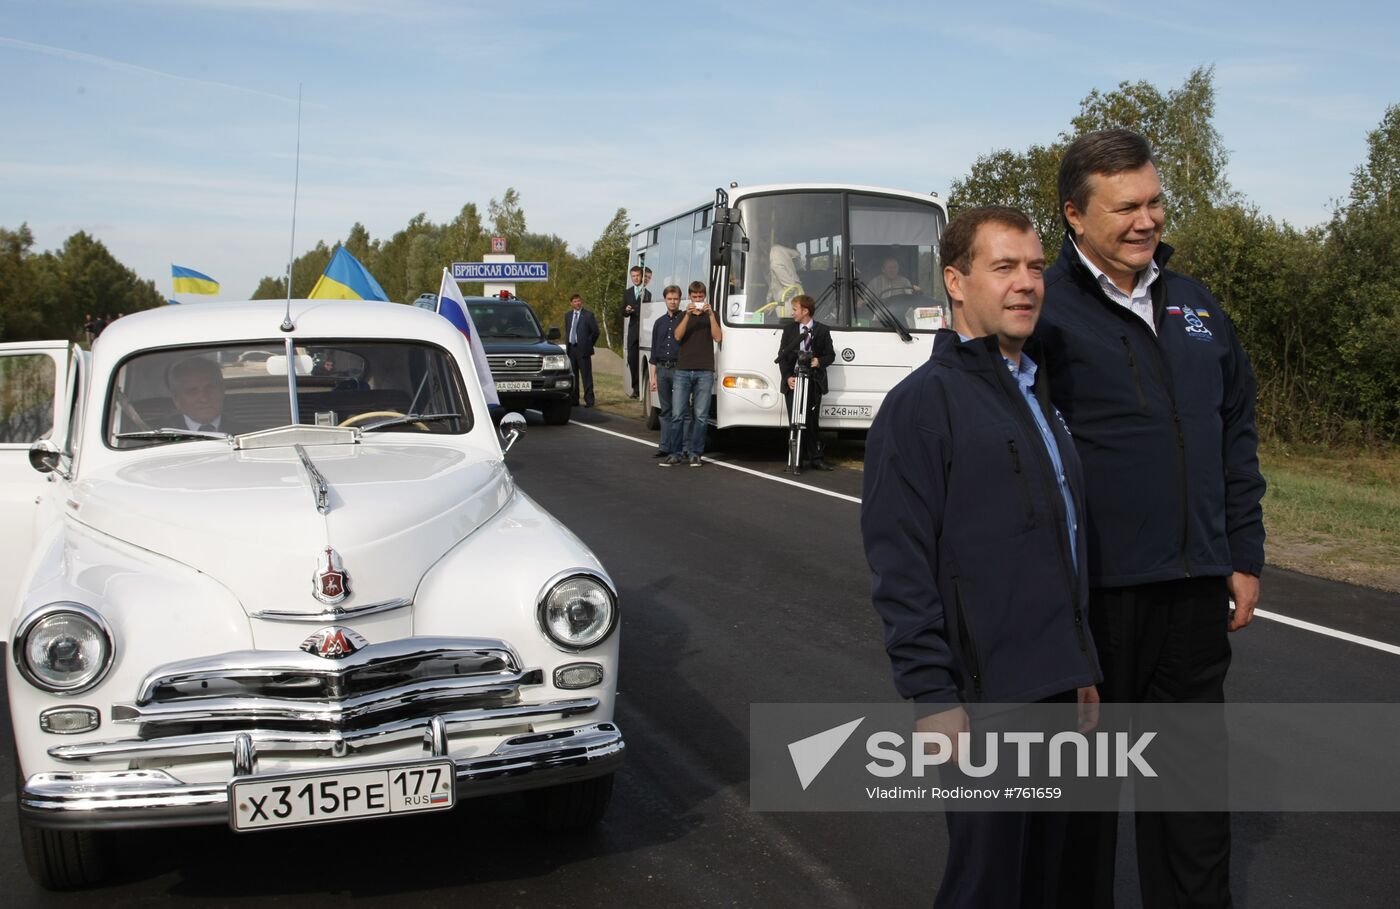 Dmitry Medvedev, Viktor Yanukovich take part in motor race